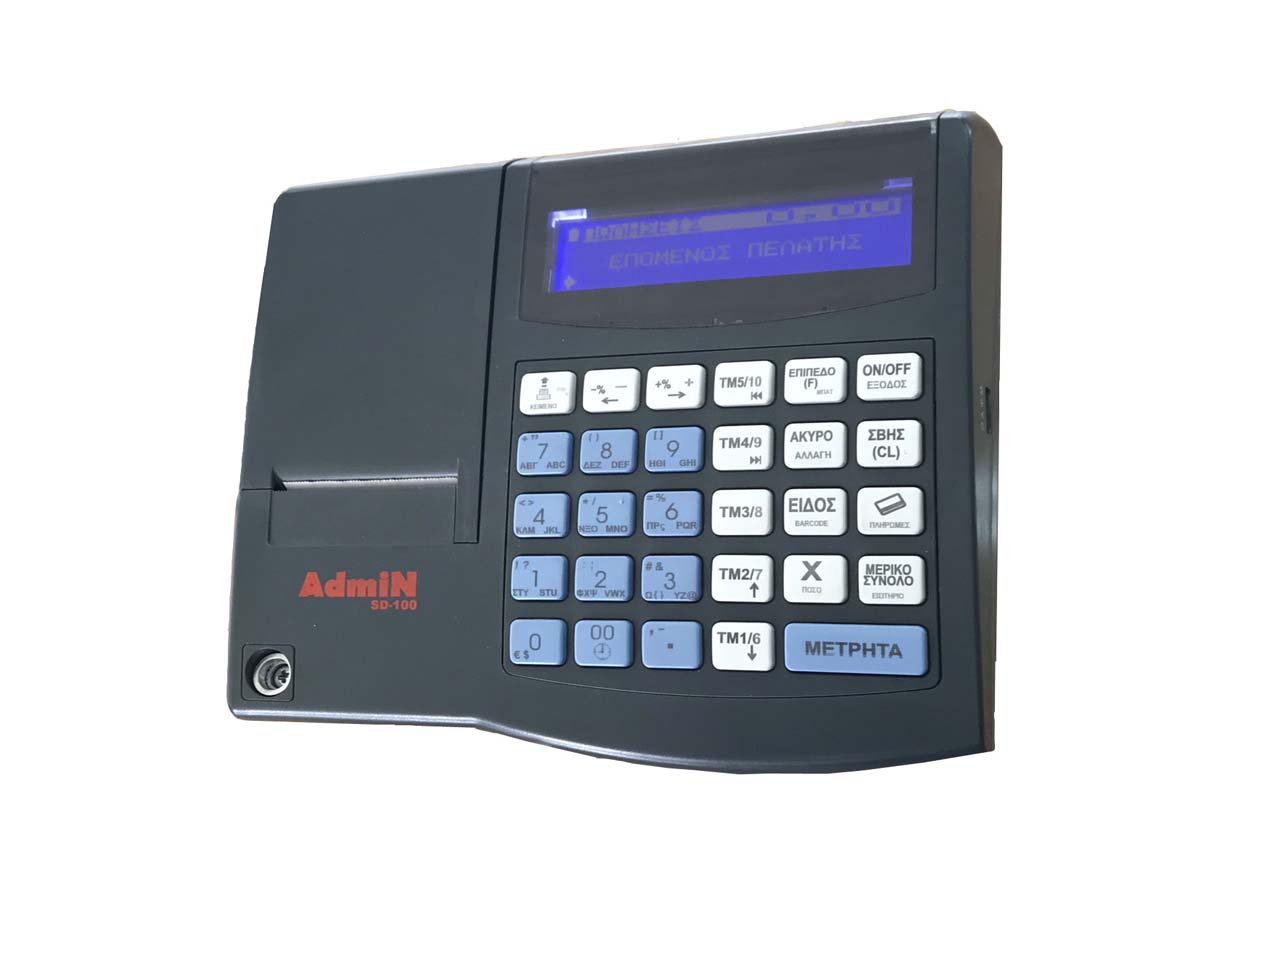 Ταμειακή Μηχανή Admin SD-100